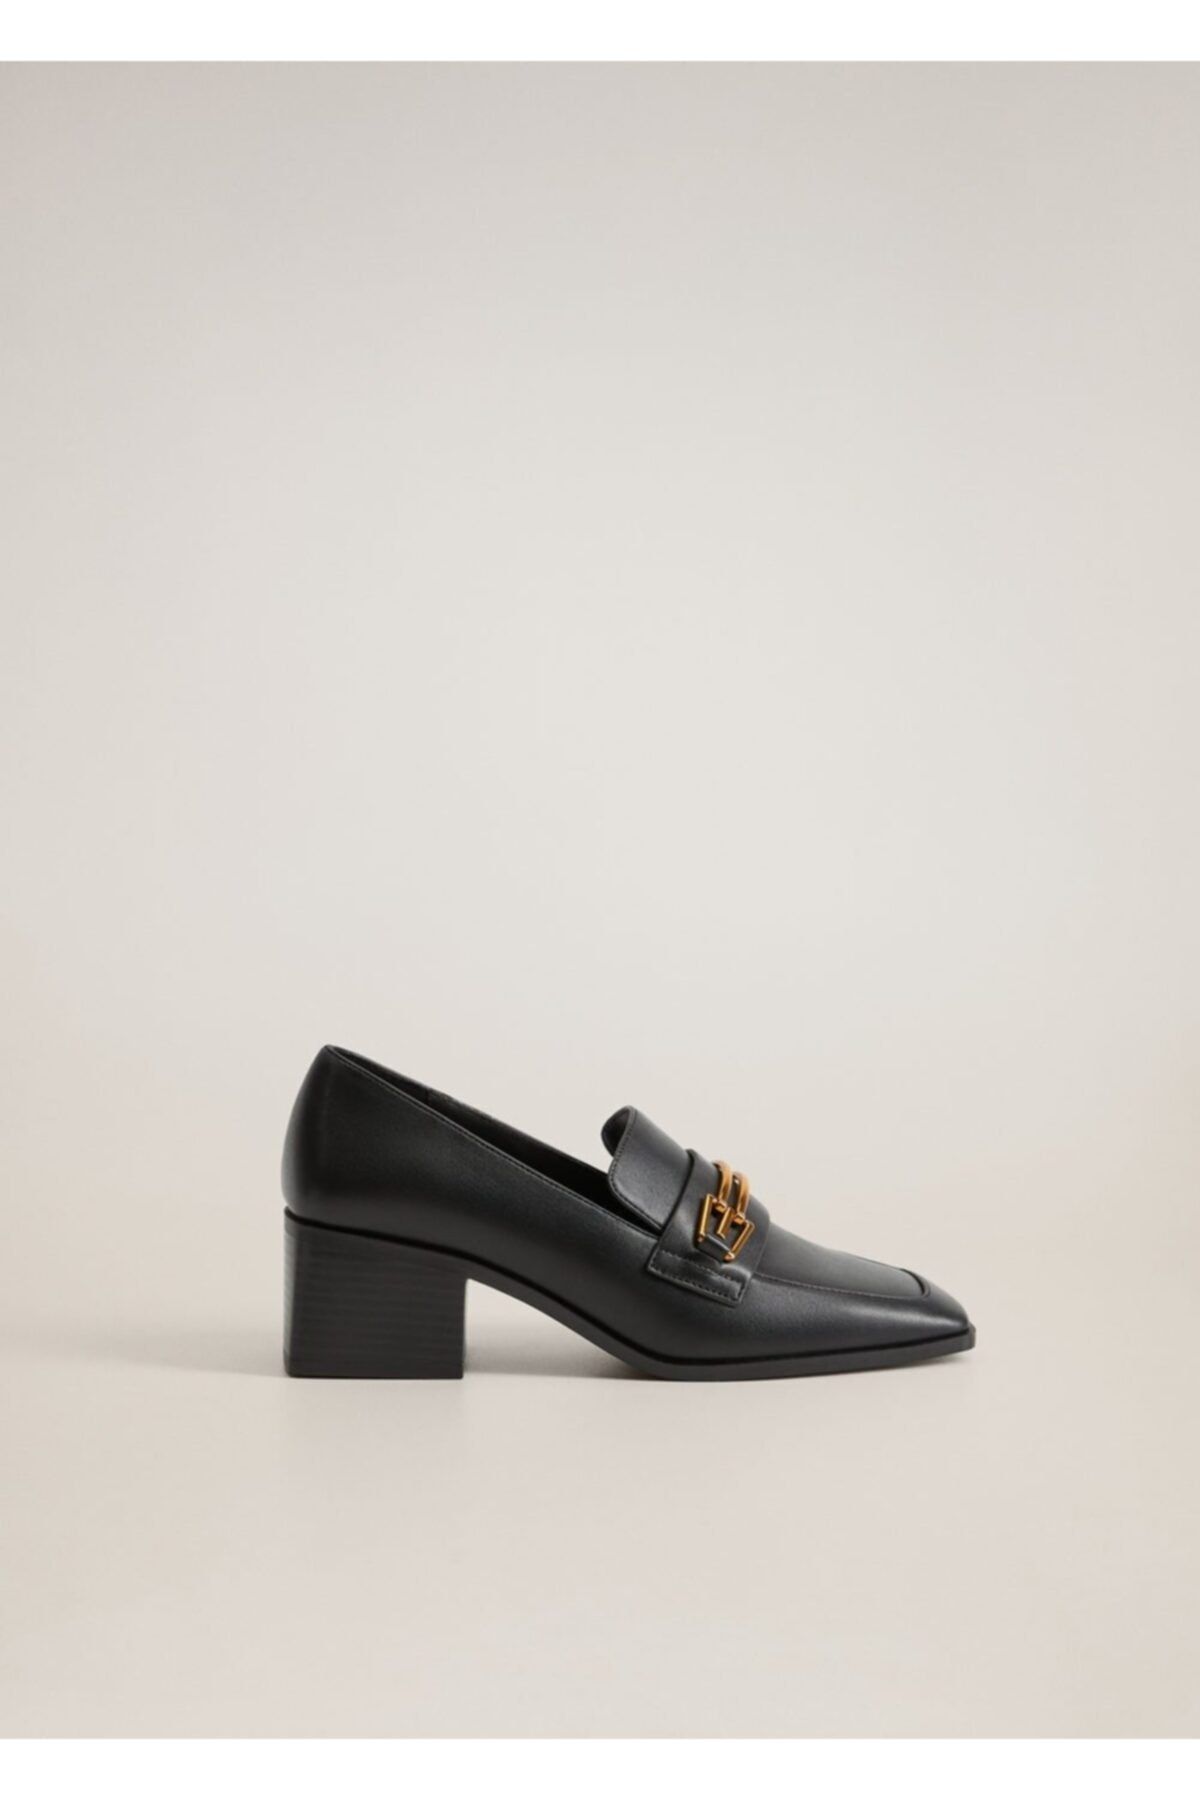 MANGO Kadın Siyah Ayakkabı